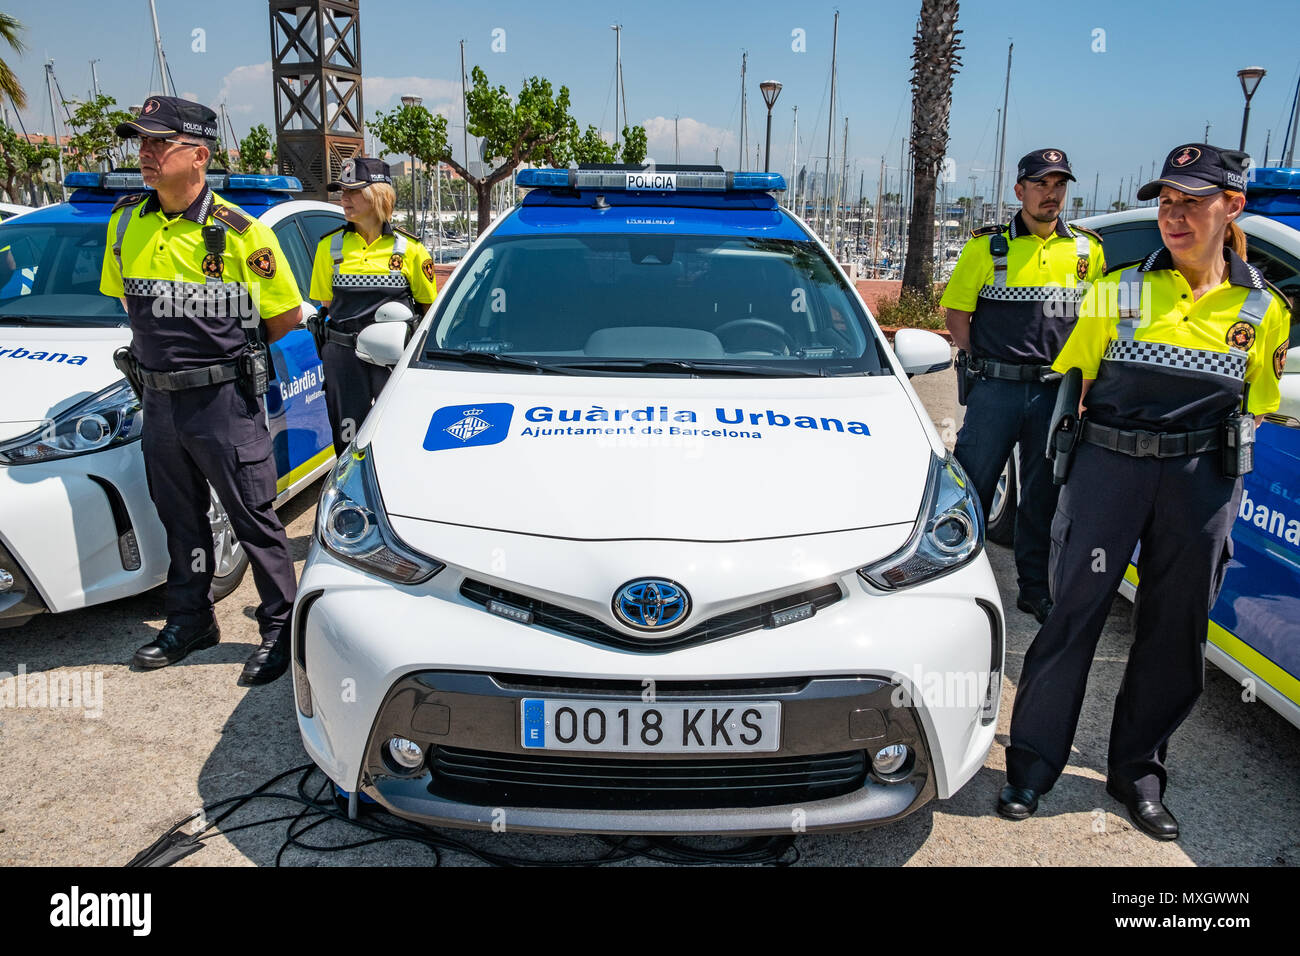 barcelona-espana-el-4-de-junio-2018-los-nuevos-vehiculos-de-la-guardia-urbana-de-barcelona-son-vistos-con-sus-unidades-de-policiacon-la-presencia-del-alcalde-ada-colau-y-el-comisionado-de-seguridad-amadeu-recasens-la-presentacion-de-la-nueva-flota-de-vehiculos-de-patrulla-de-la-guardia-urbana-de-barcelona-la-policia-ha-tenido-lugar-la-inversion-fue-de-126-millones-de-euros-los-vehiculos-nuevos-con-un-sistema-hibrido-permite-un-ahorro-de-combustible-de-608-euros-por-vehiculo-y-ano-estos-nuevos-vehiculos-estan-equipados-con-la-nueva-tecnologia-de-la-comunicacion-y-camaras-con-reconocimiento-de-matriculas-mxgwwn.jpg